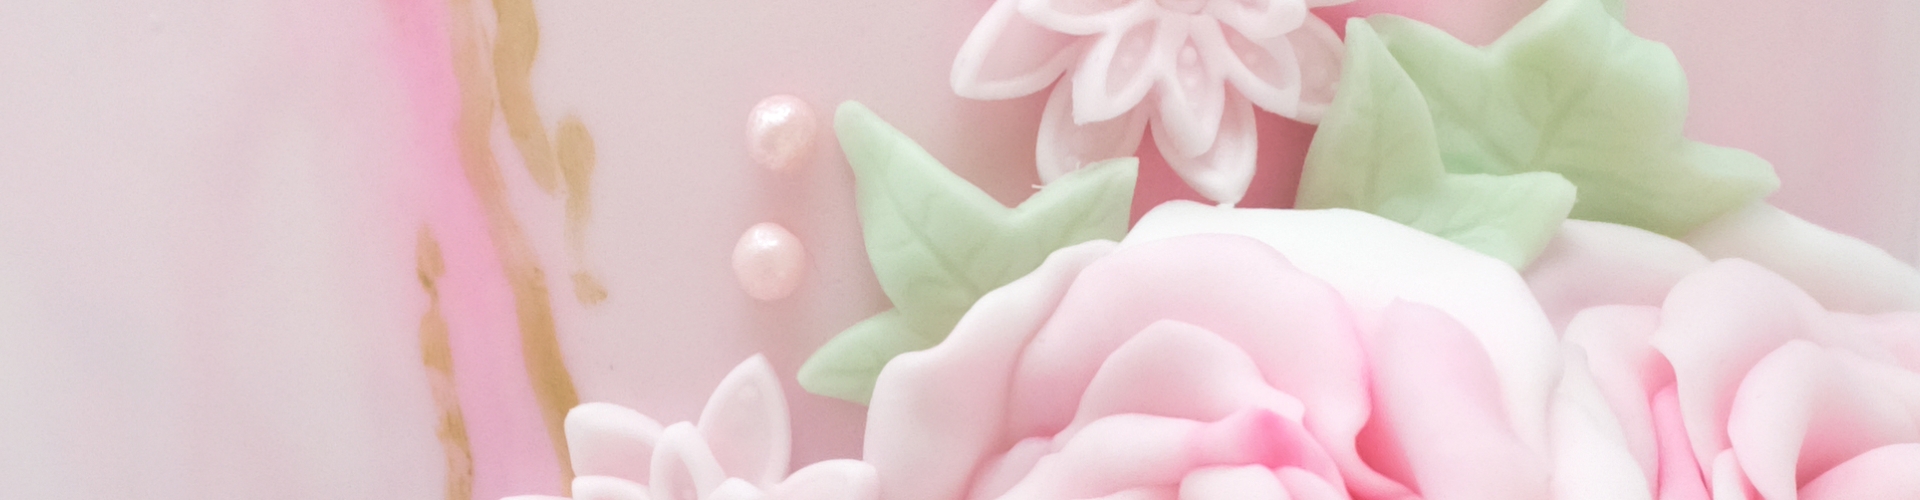 pink wedding cake header image 2